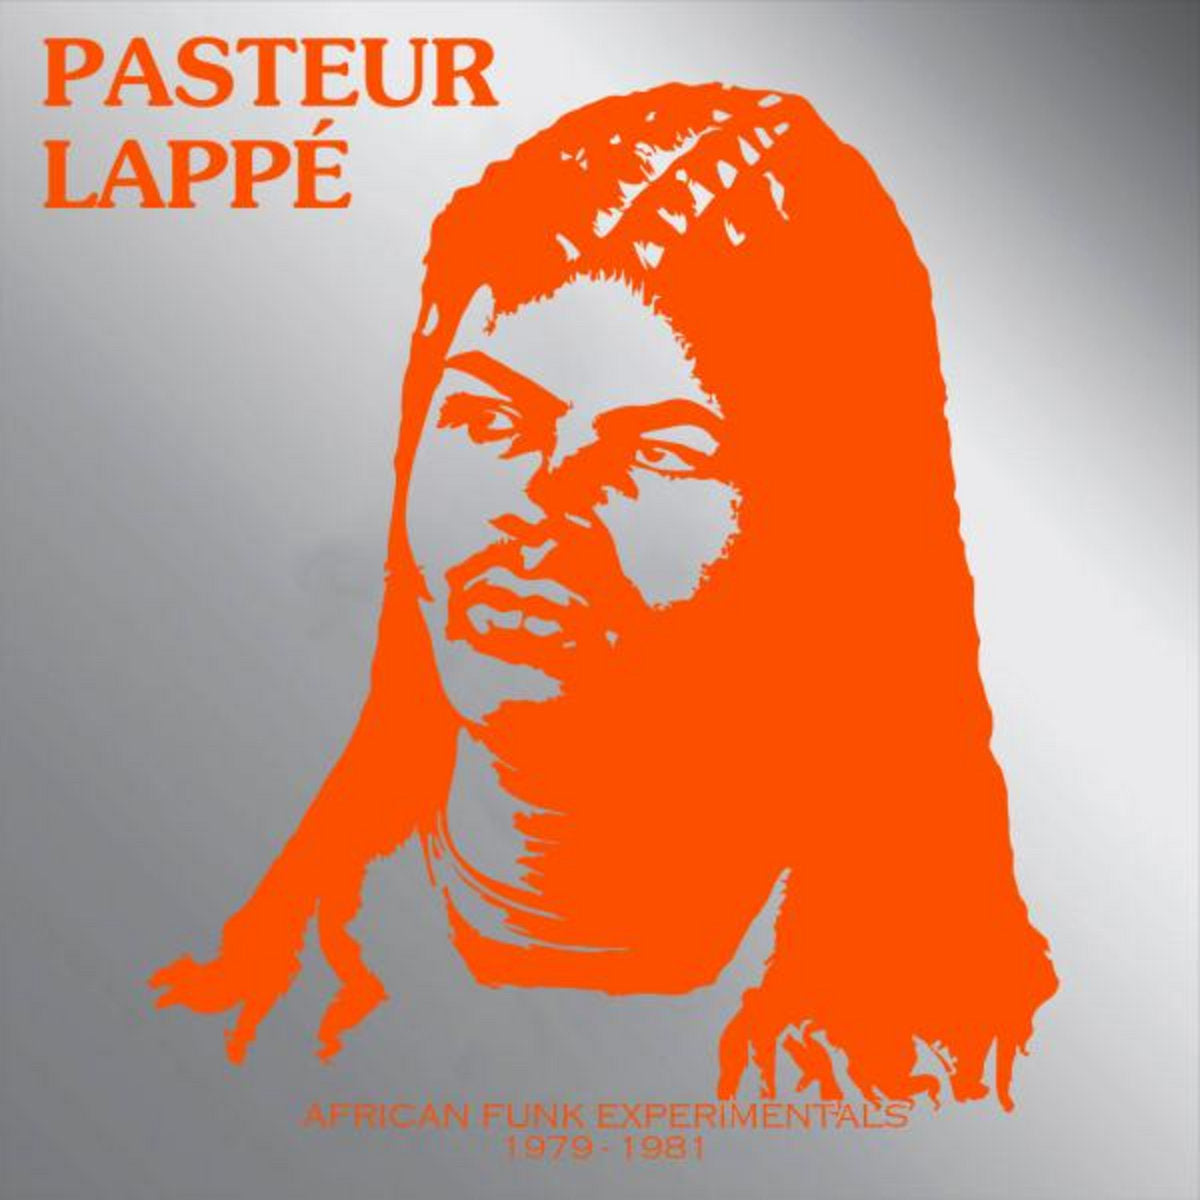 Pasteur Lappe: African Funk Experimentals 1979-1981 (Vinyl LP)